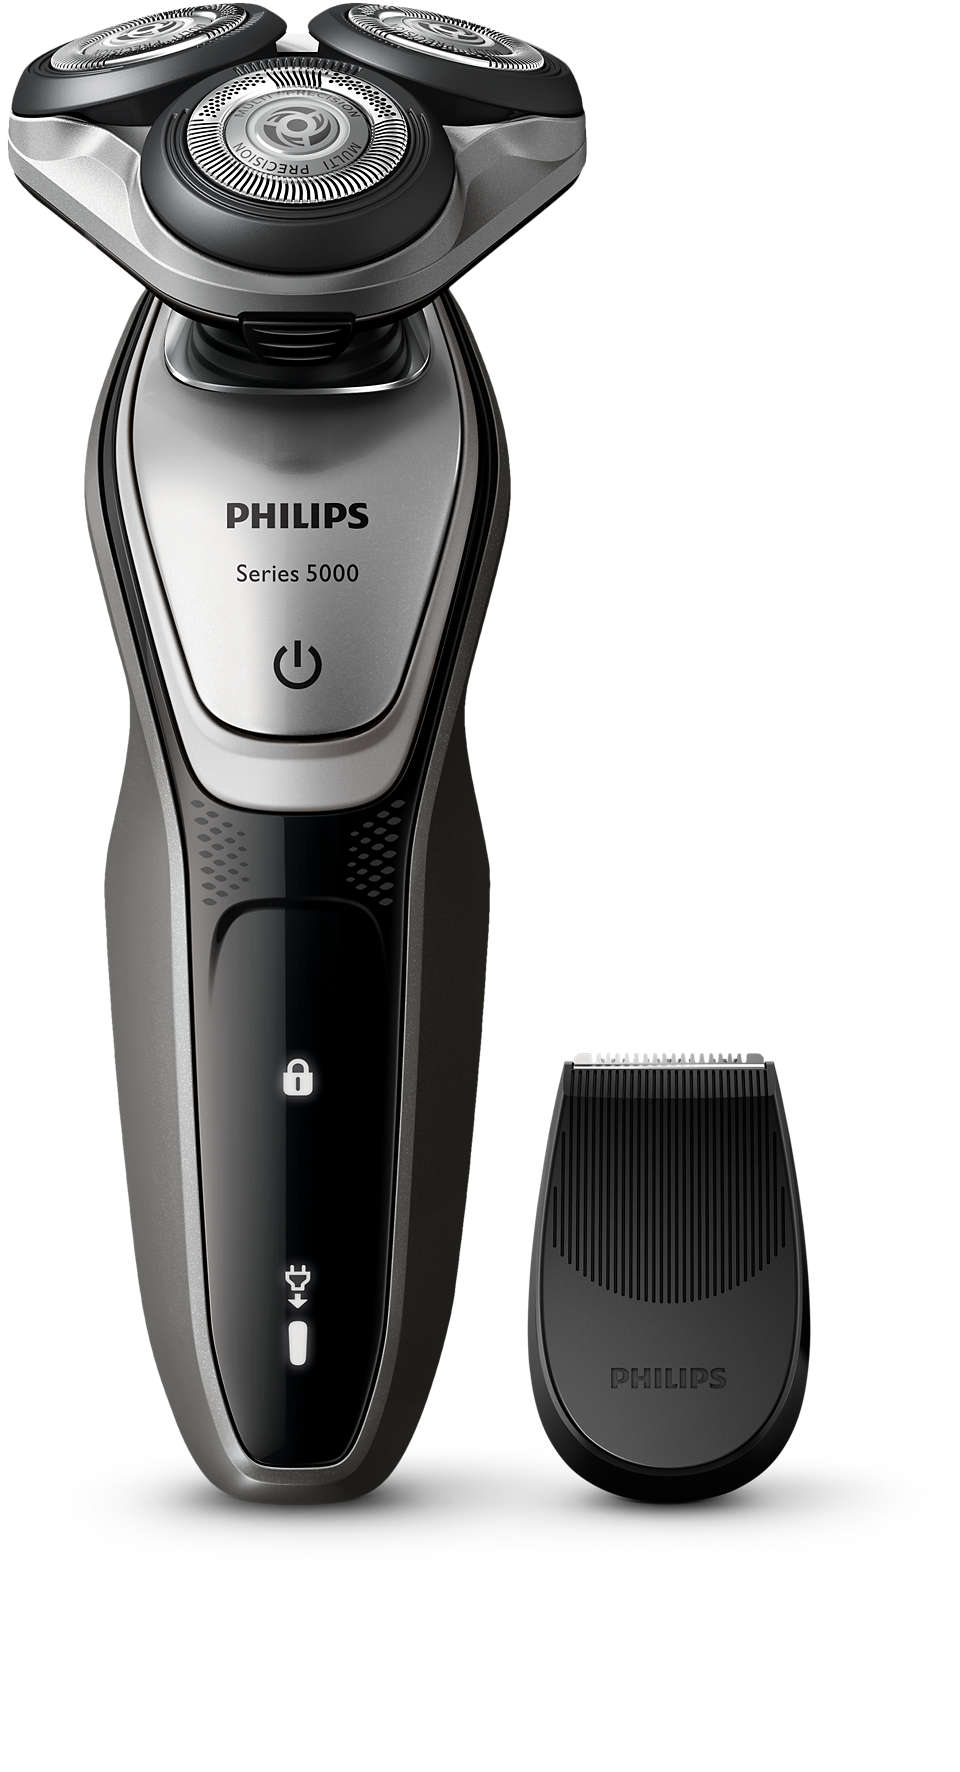 Shaver series 5000 ウェット＆ドライ電気シェーバー S5216/06 | Philips